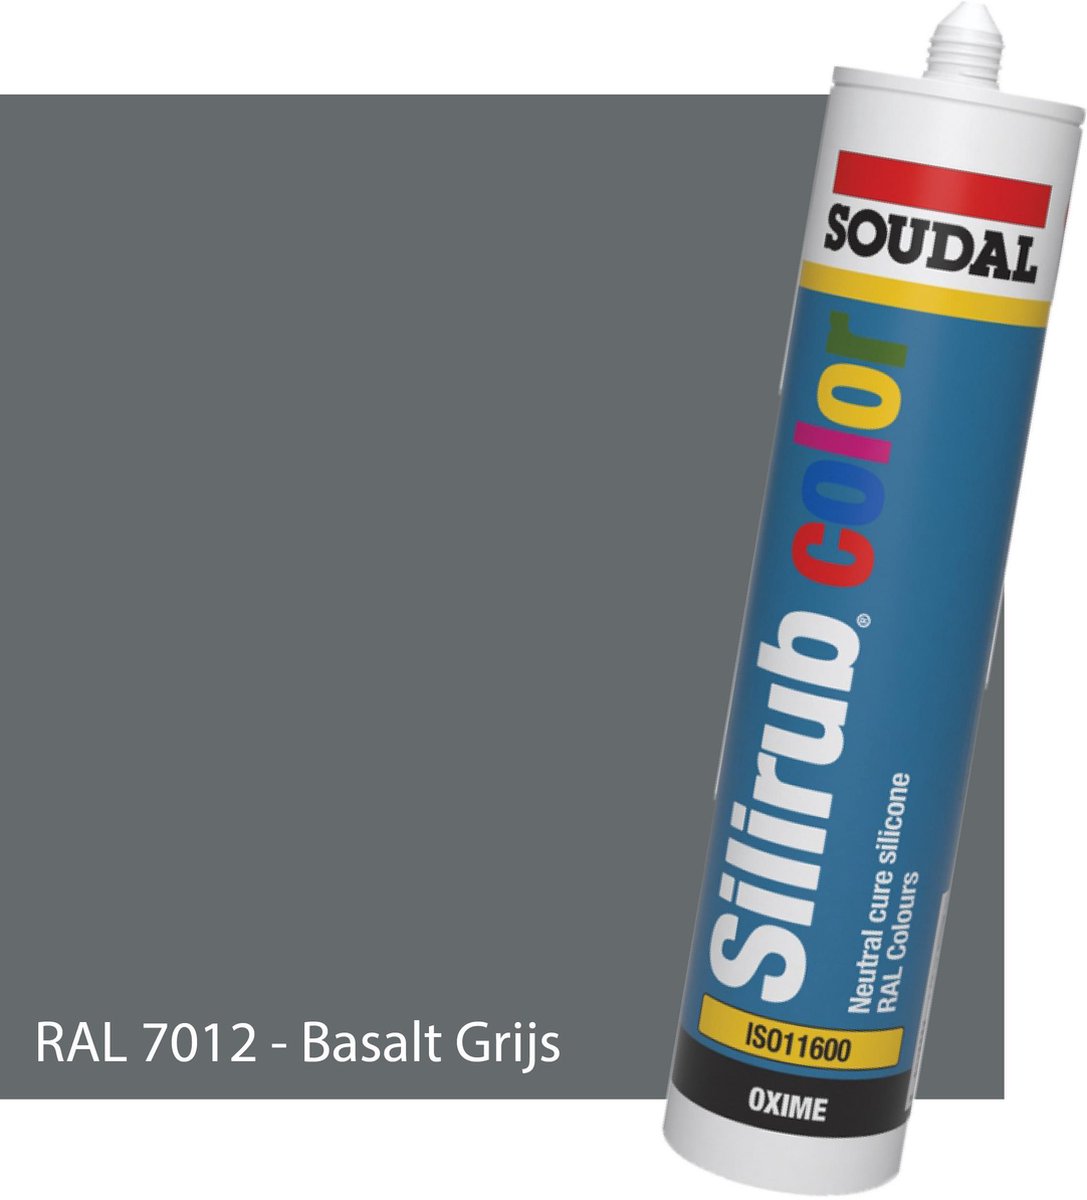 Siliconen Kit Sanitair - Soudal - Keuken - Voor binnen & buiten - RAL 7012 Basalt Grijs - 300ml koker